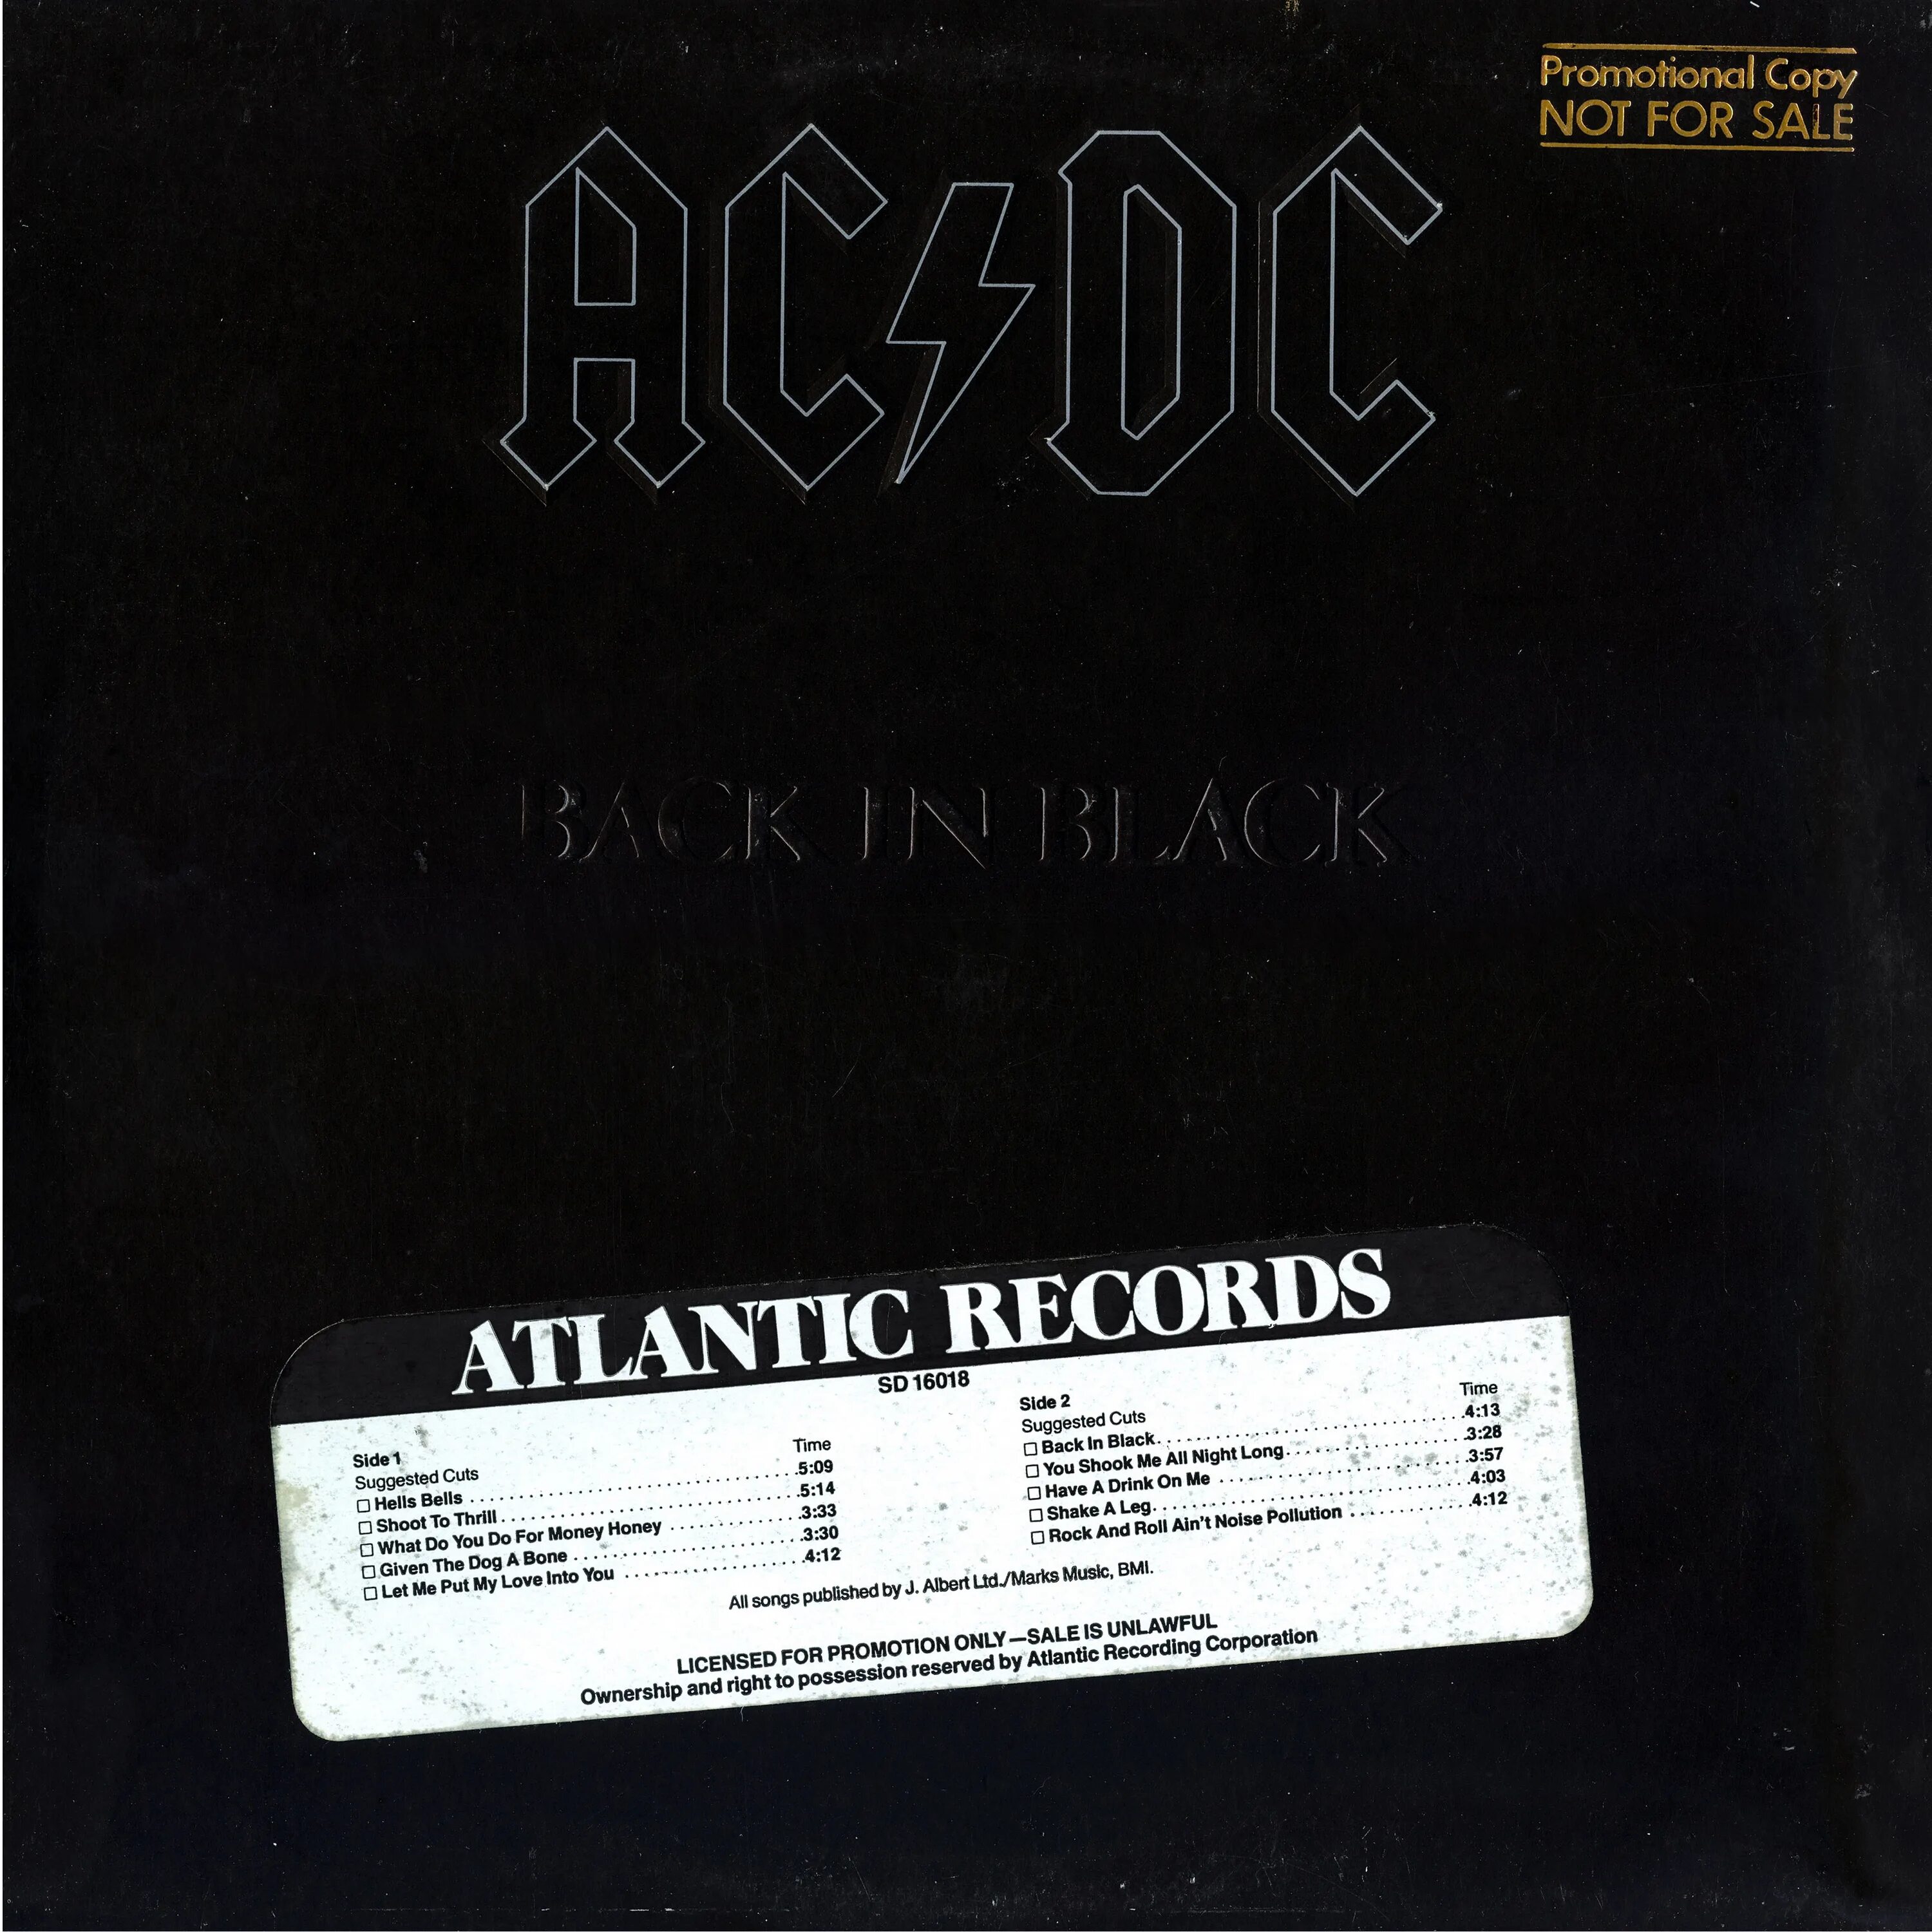 Виниловая пластинка AC/DC back in Black. AC DC 1980 back in Black. AC DC Блэк ин Блэк пластинка а. AC DC back in Black альбом. Back flac